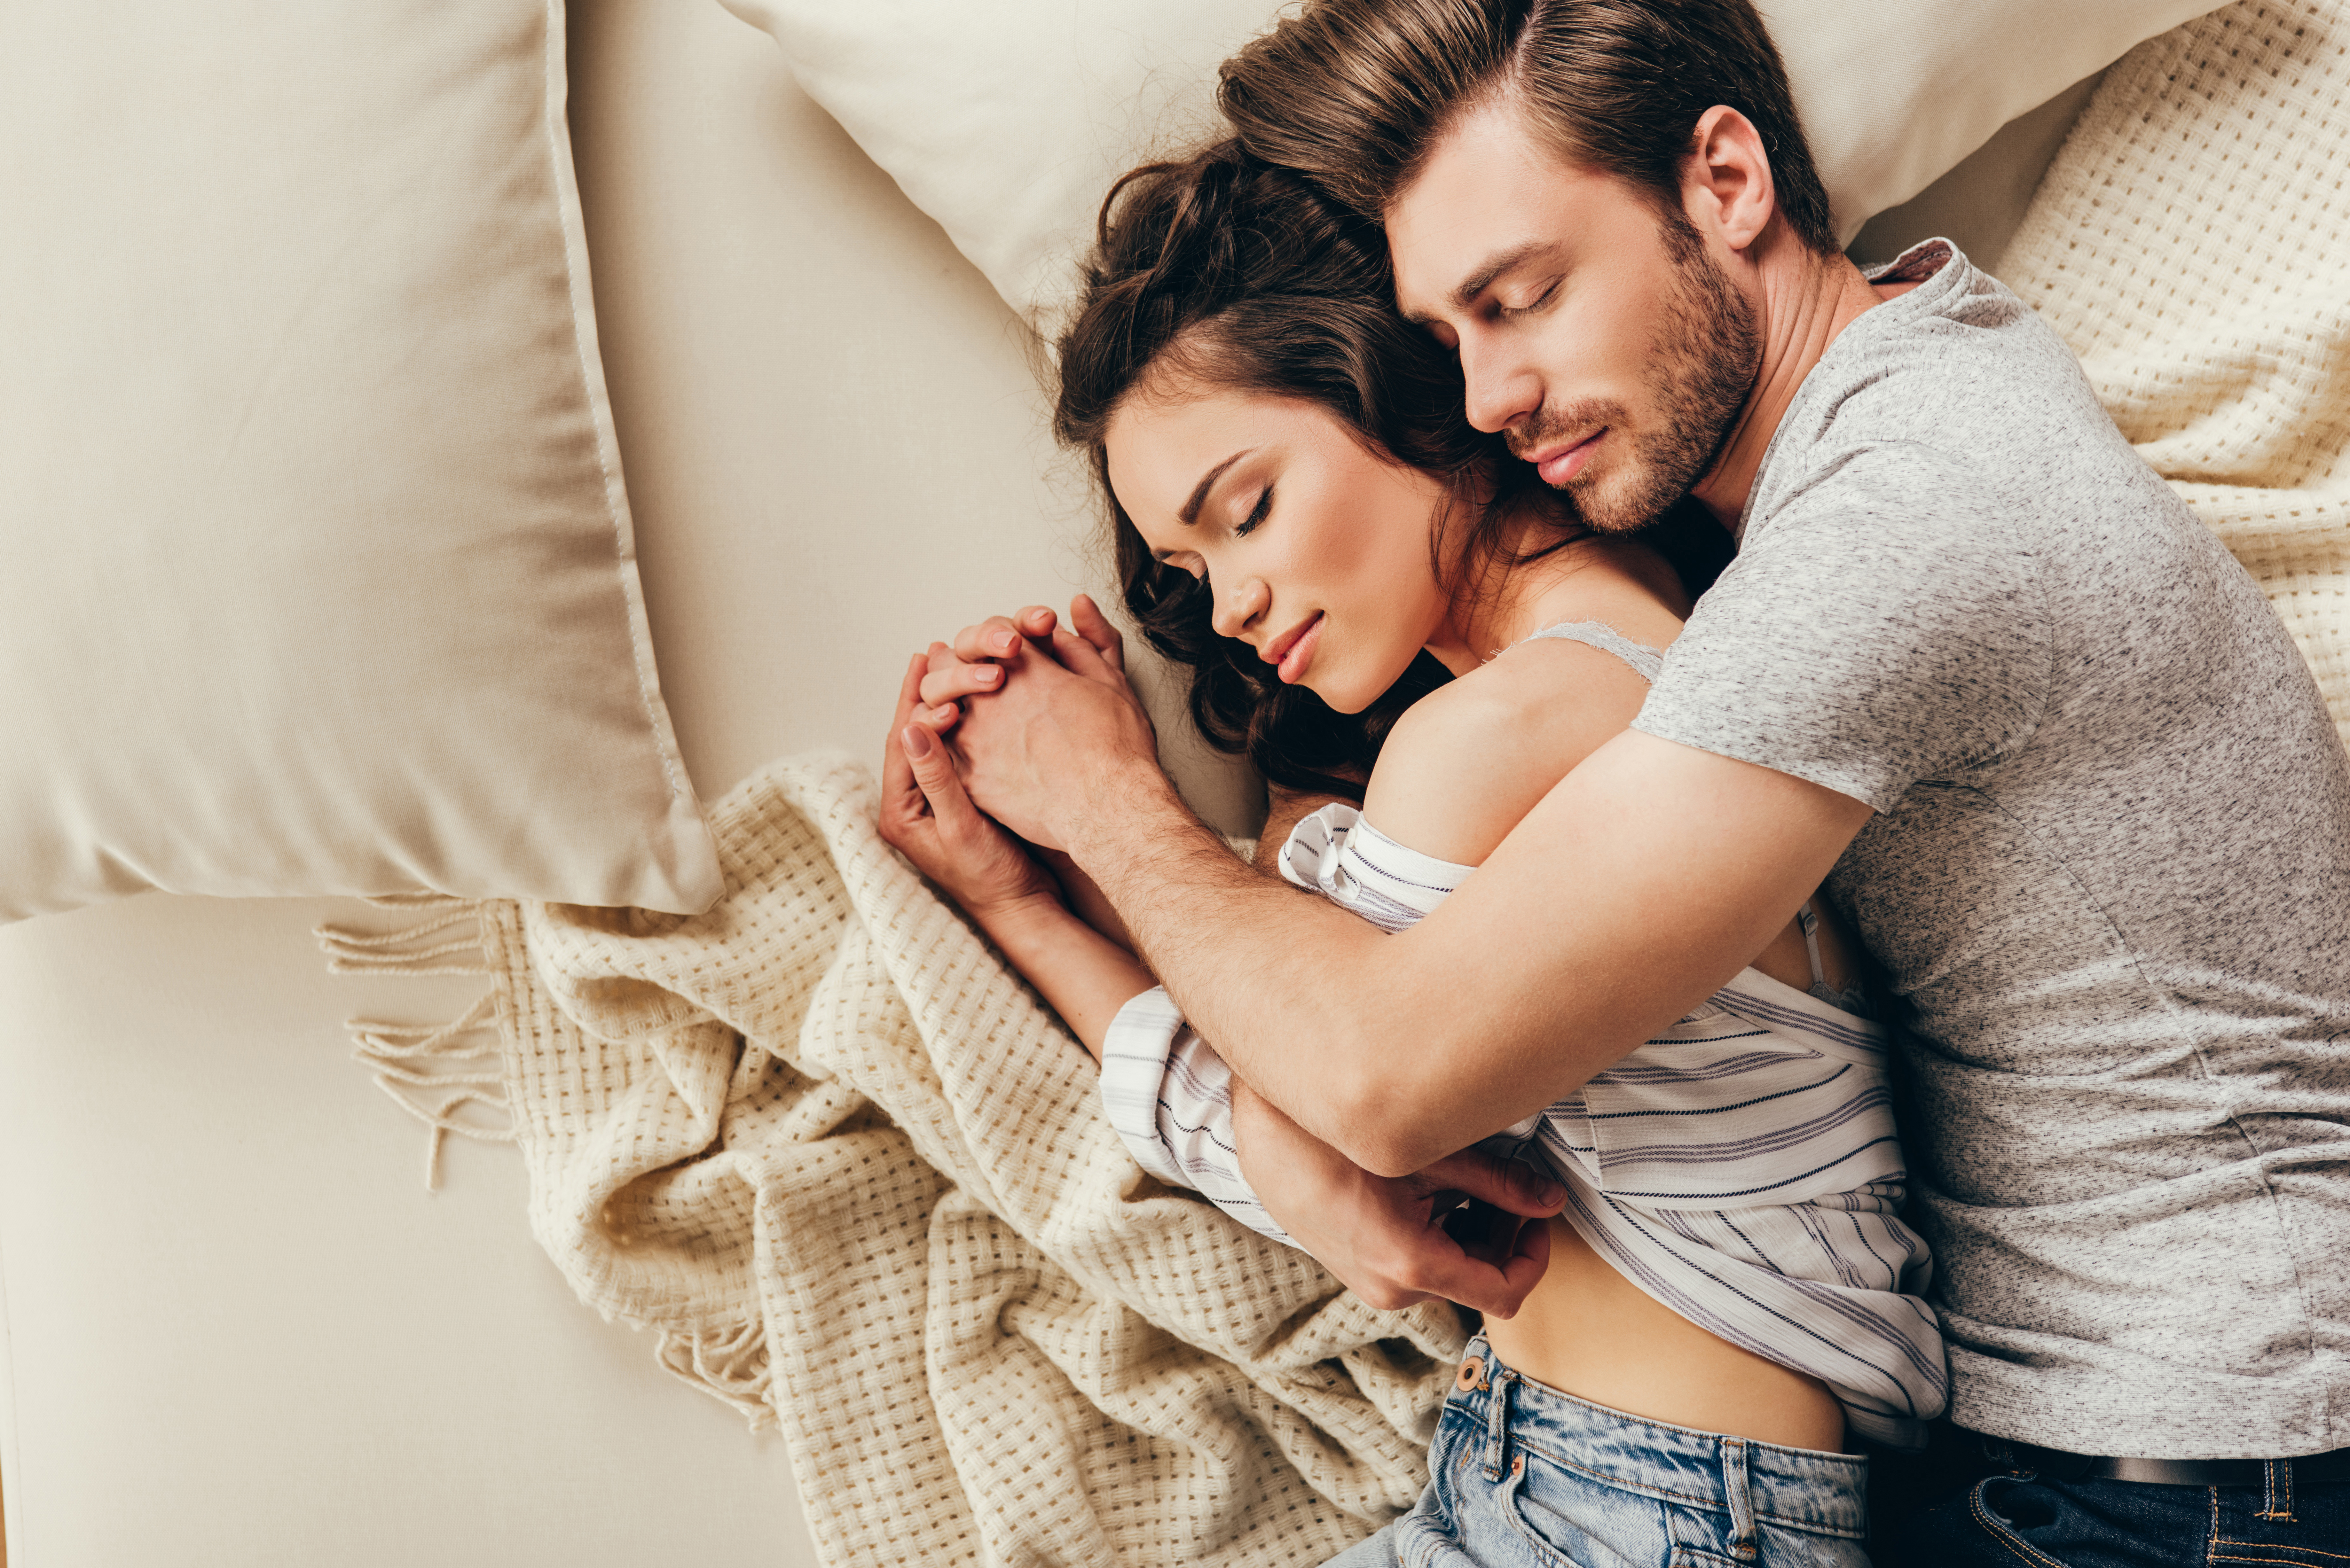  Поганий сон у чоловіків може стати причиною падіння рівня тестостерону, дослідження  